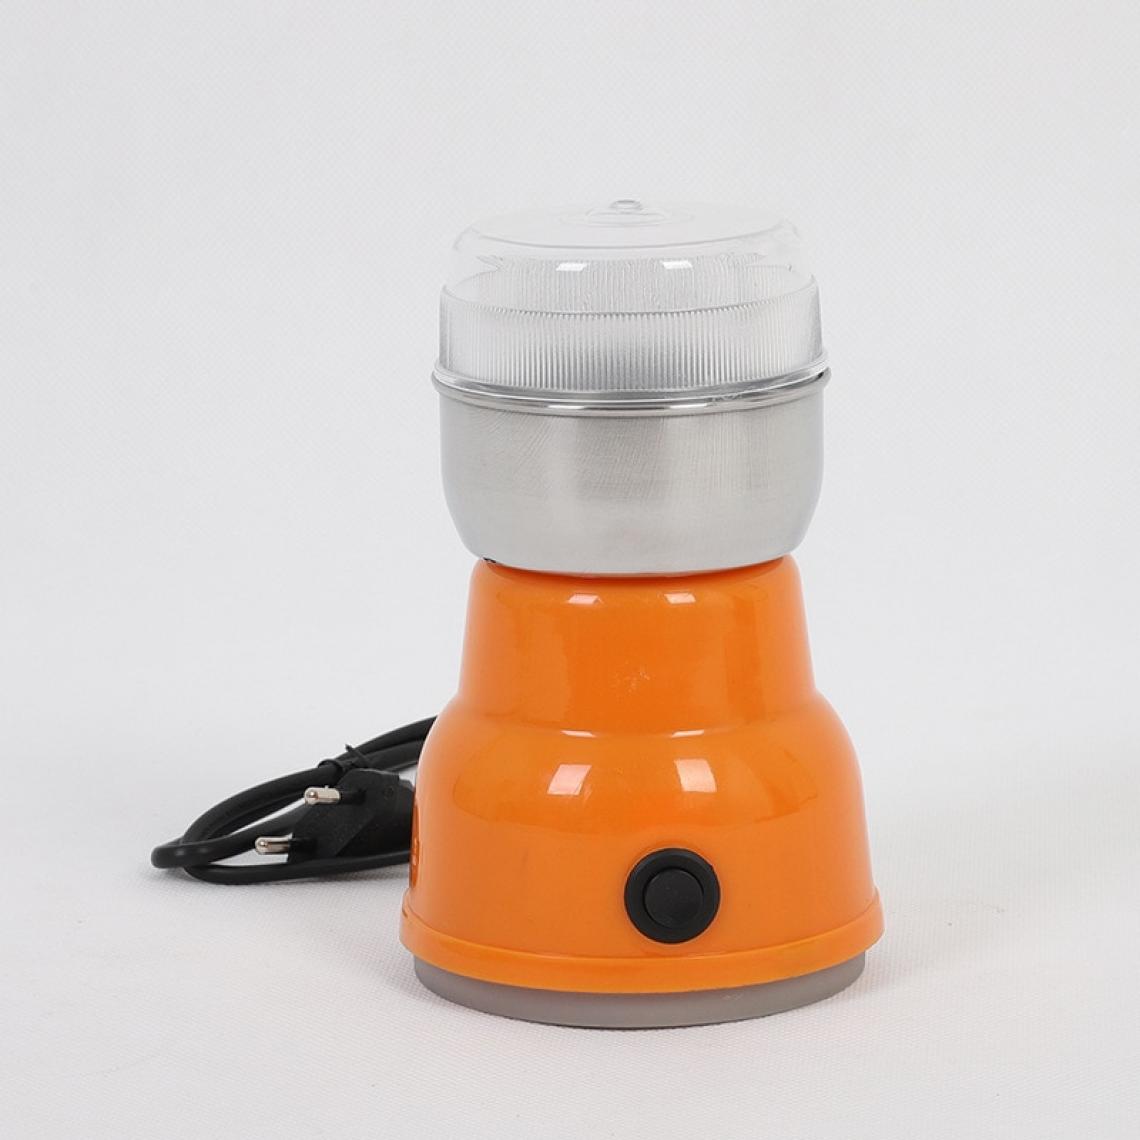 Universal - Mini broyeur électrique multifonctionnel broyeur à grains de café à usage domestique broyeur à grains de café poivre(Orange) - Moulin à café